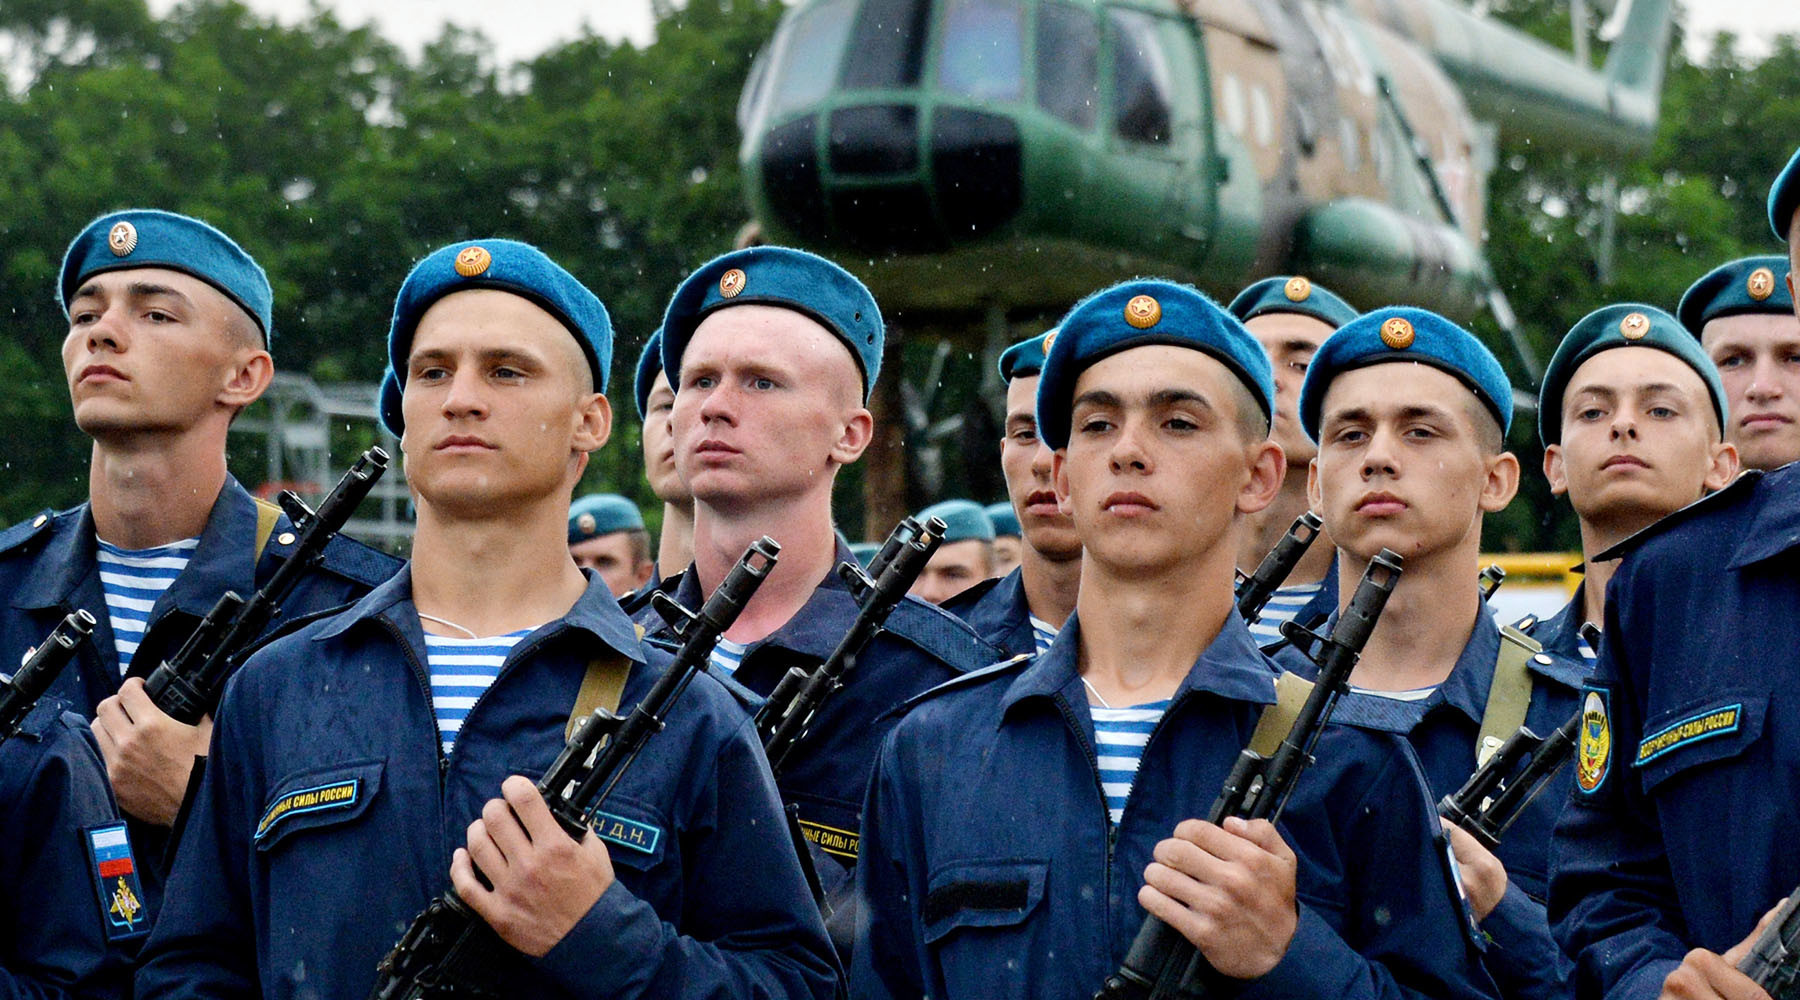 Кузница воинской славы: почему гвардейские части остаются элитой российской армии